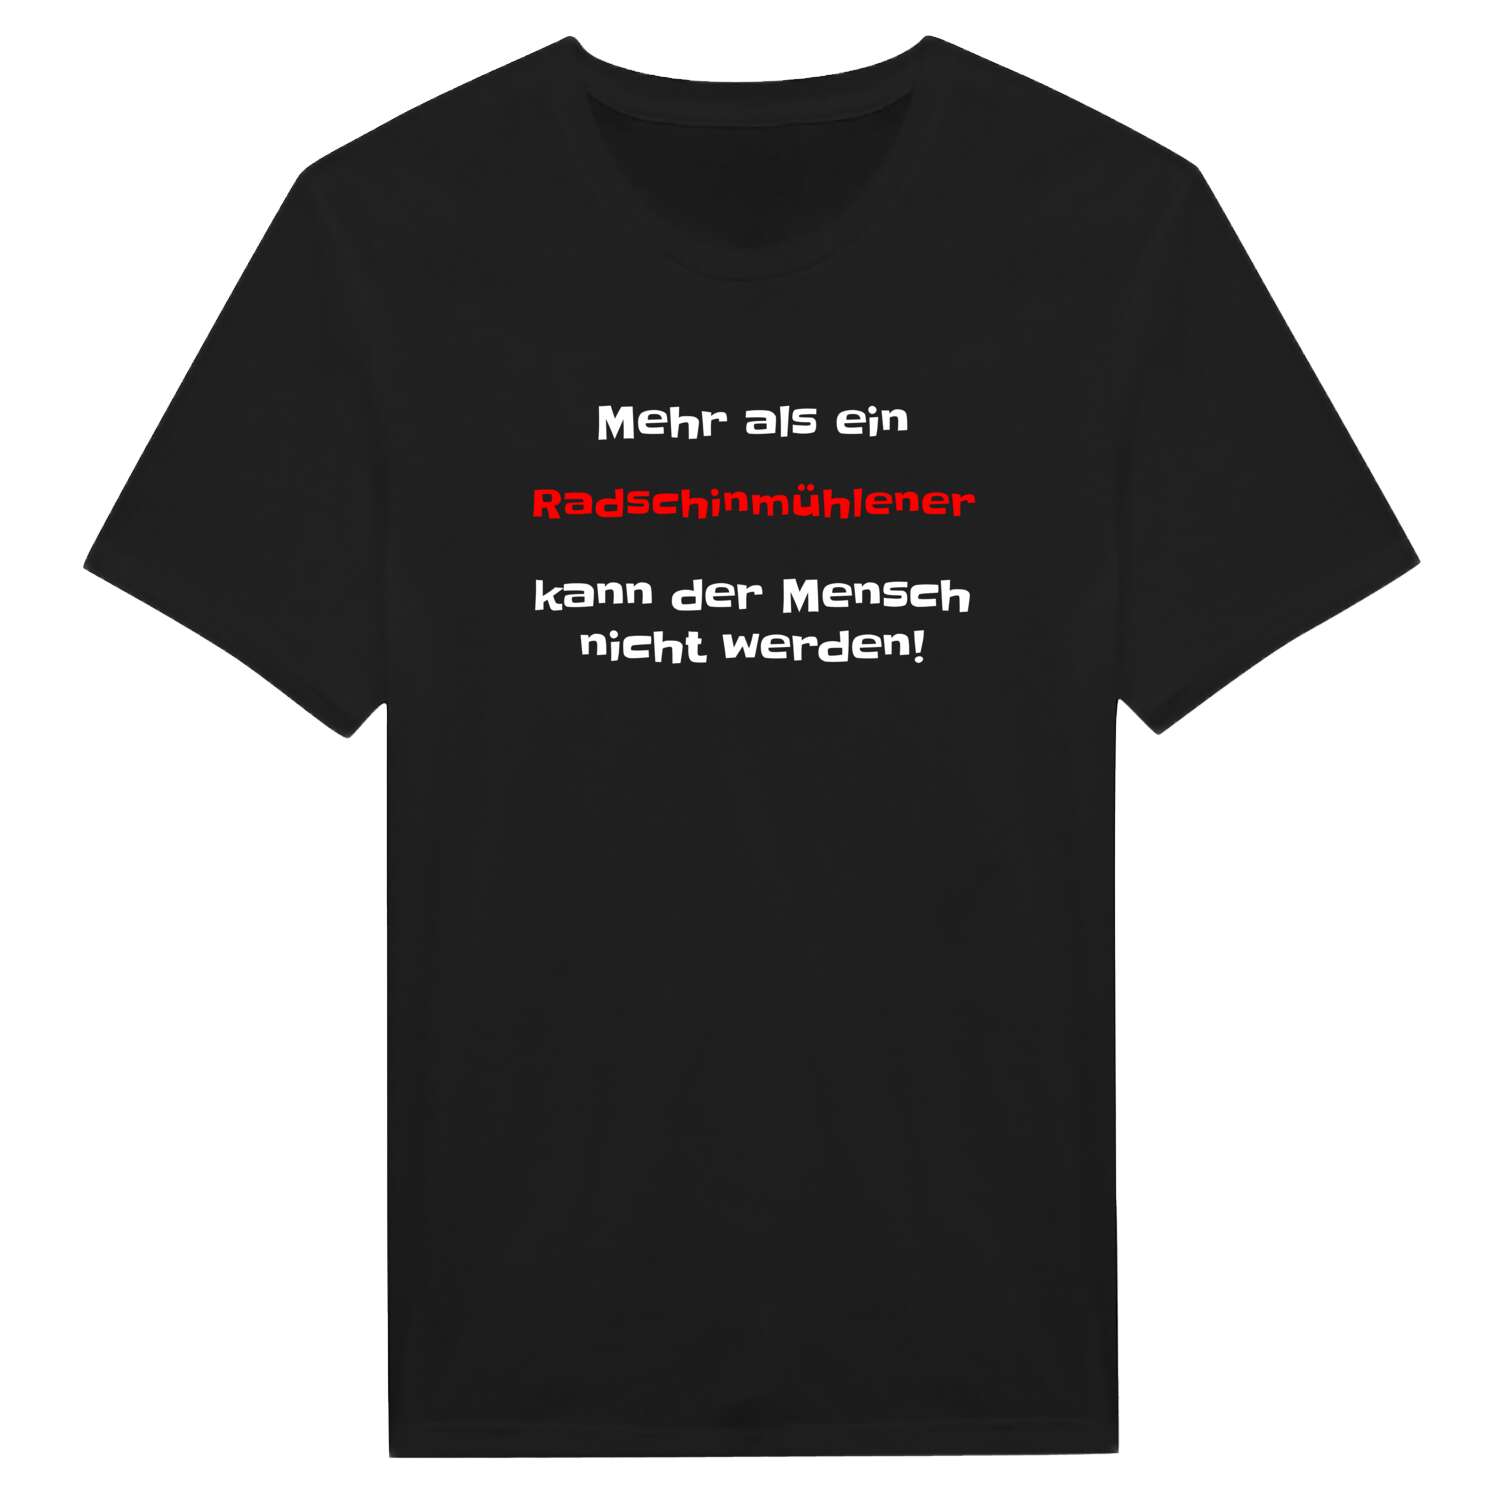 Radschinmühle T-Shirt »Mehr als ein«